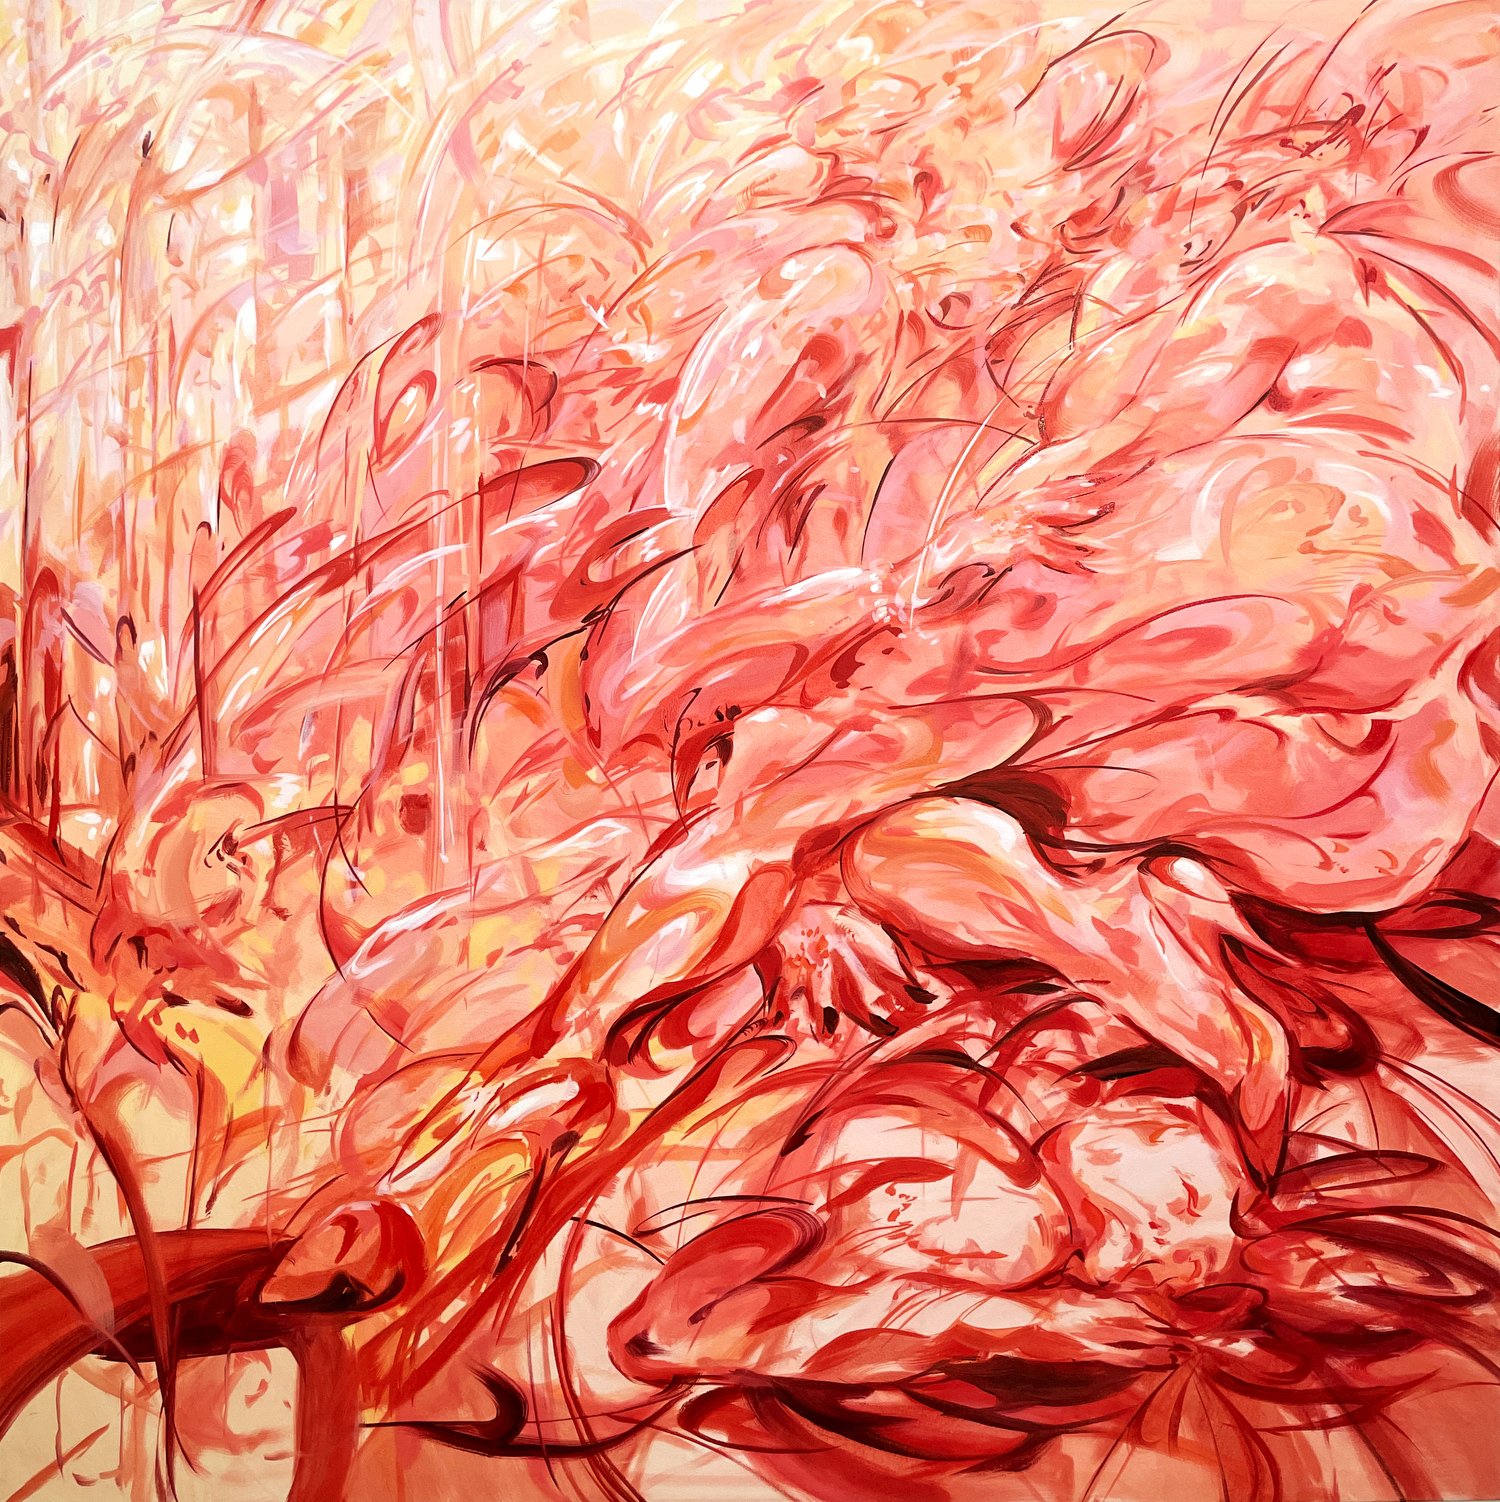 Julia Jo, In Heat of Passion, 2022, oil on cavas, 60 x 60 in